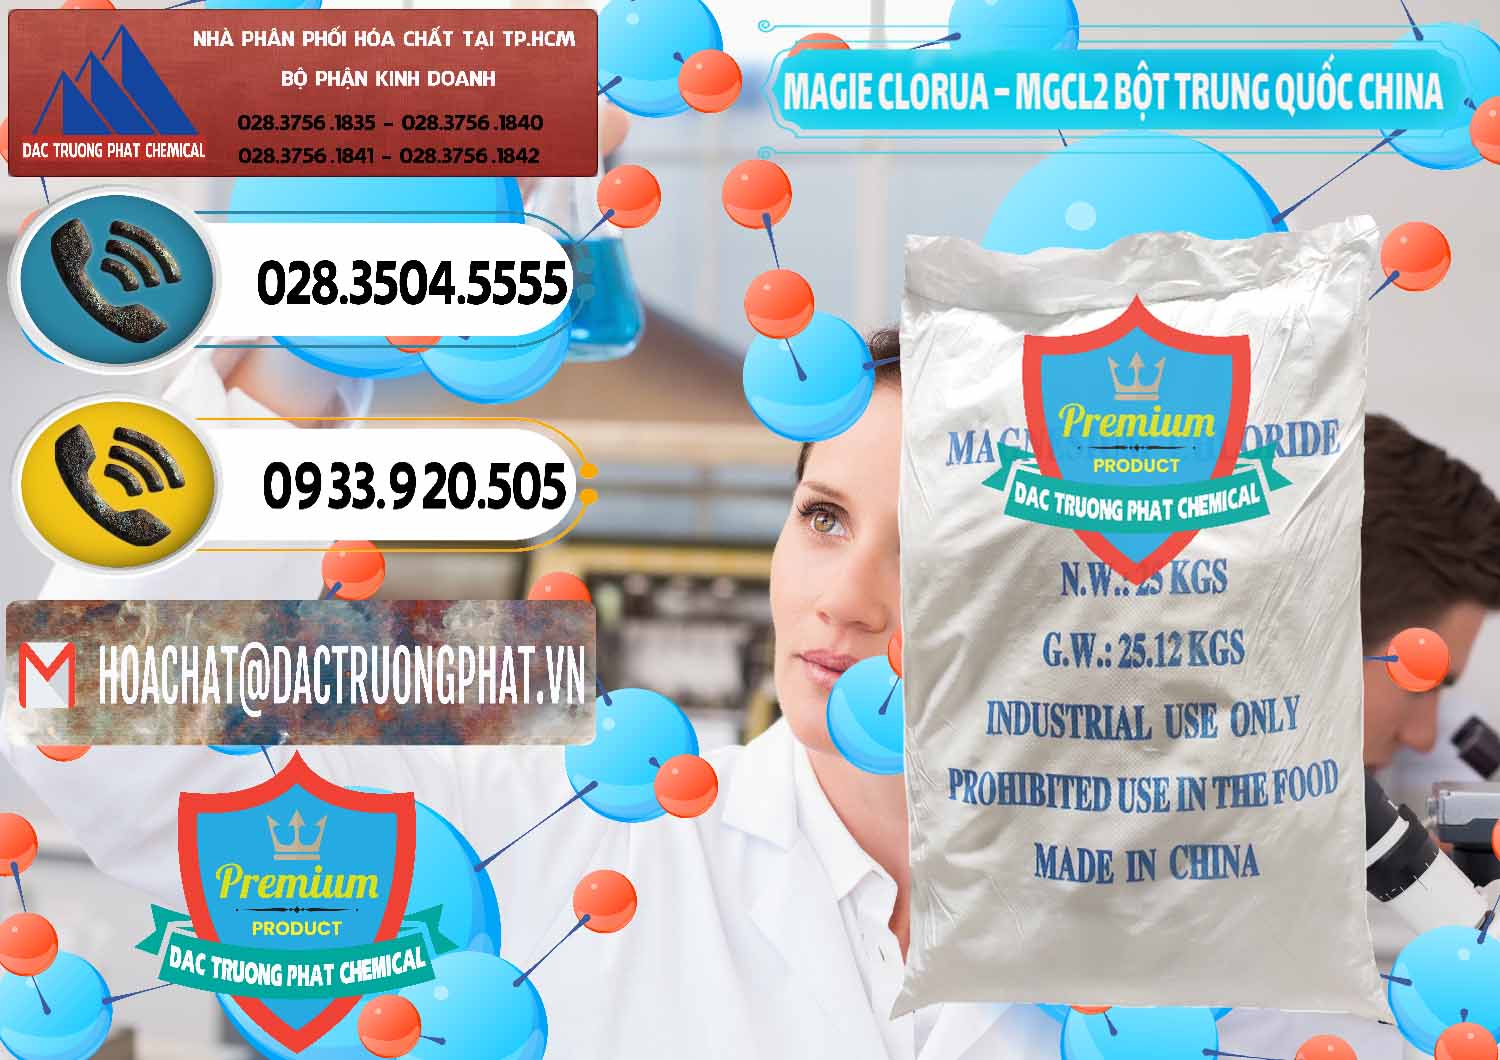 Cty bán và phân phối Magie Clorua – MGCL2 96% Dạng Bột Bao Chữ Xanh Trung Quốc China - 0207 - Chuyên cung cấp - nhập khẩu hóa chất tại TP.HCM - hoachatdetnhuom.vn